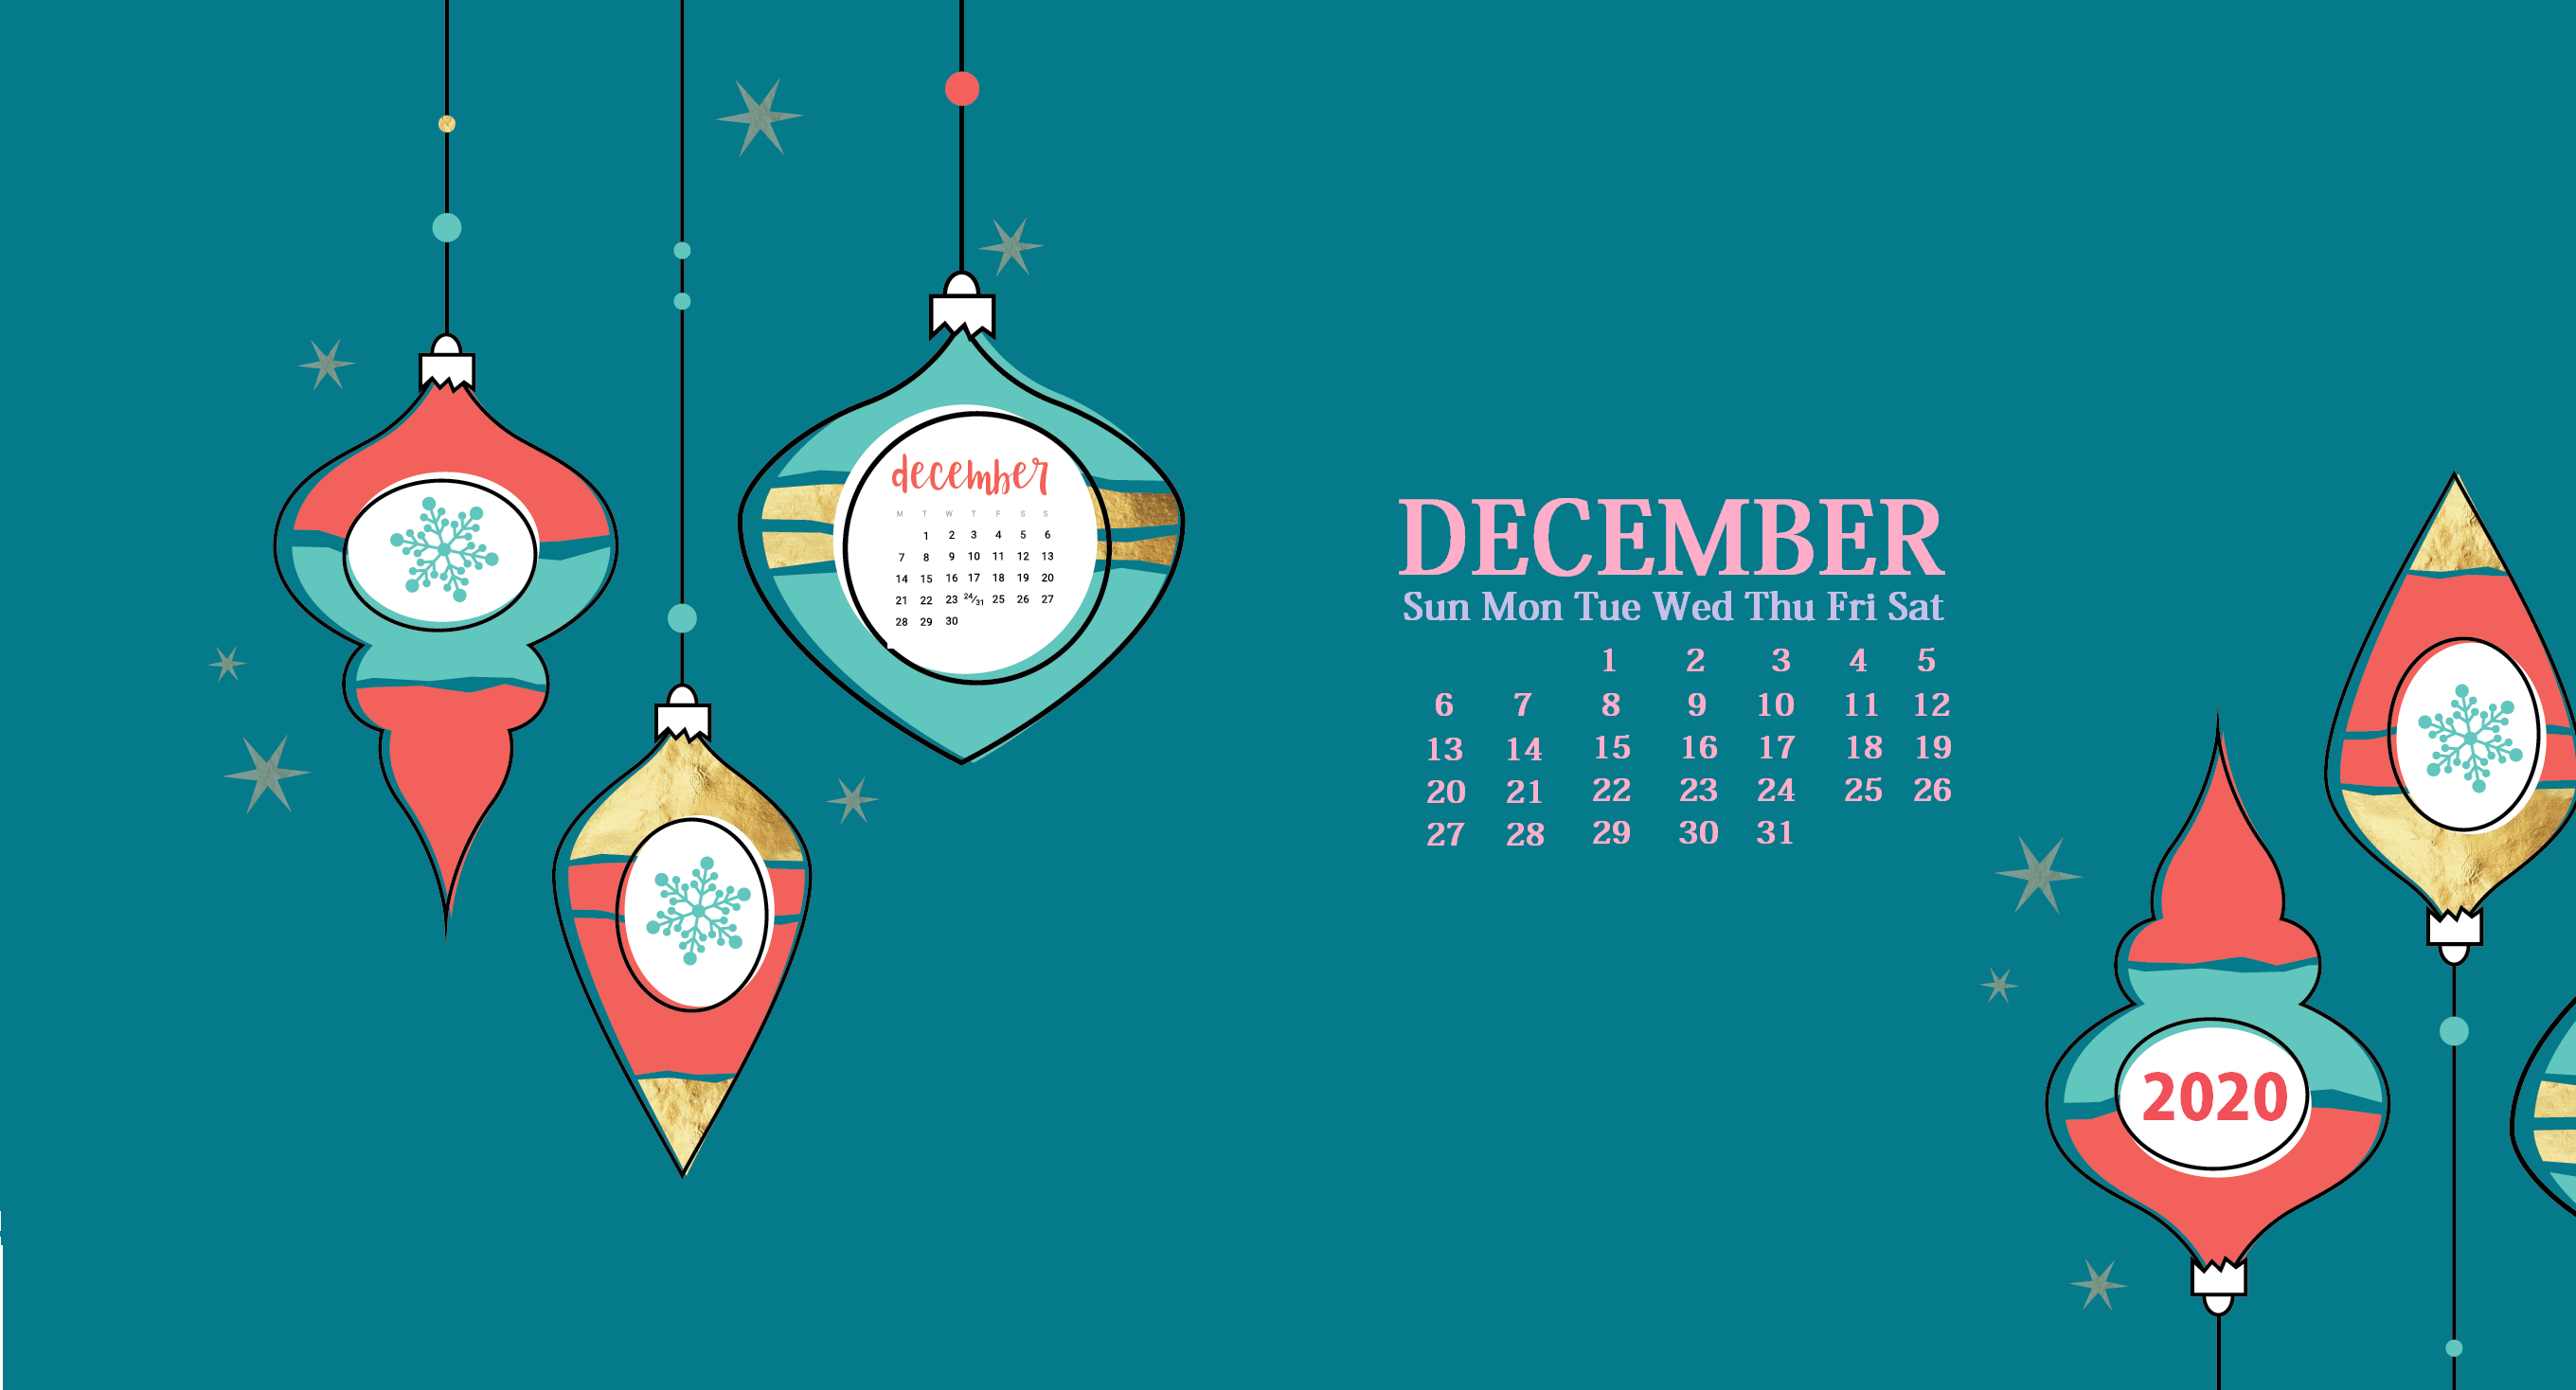 [44+] December 2020 Calendar Wallpapers - WallpaperSafari